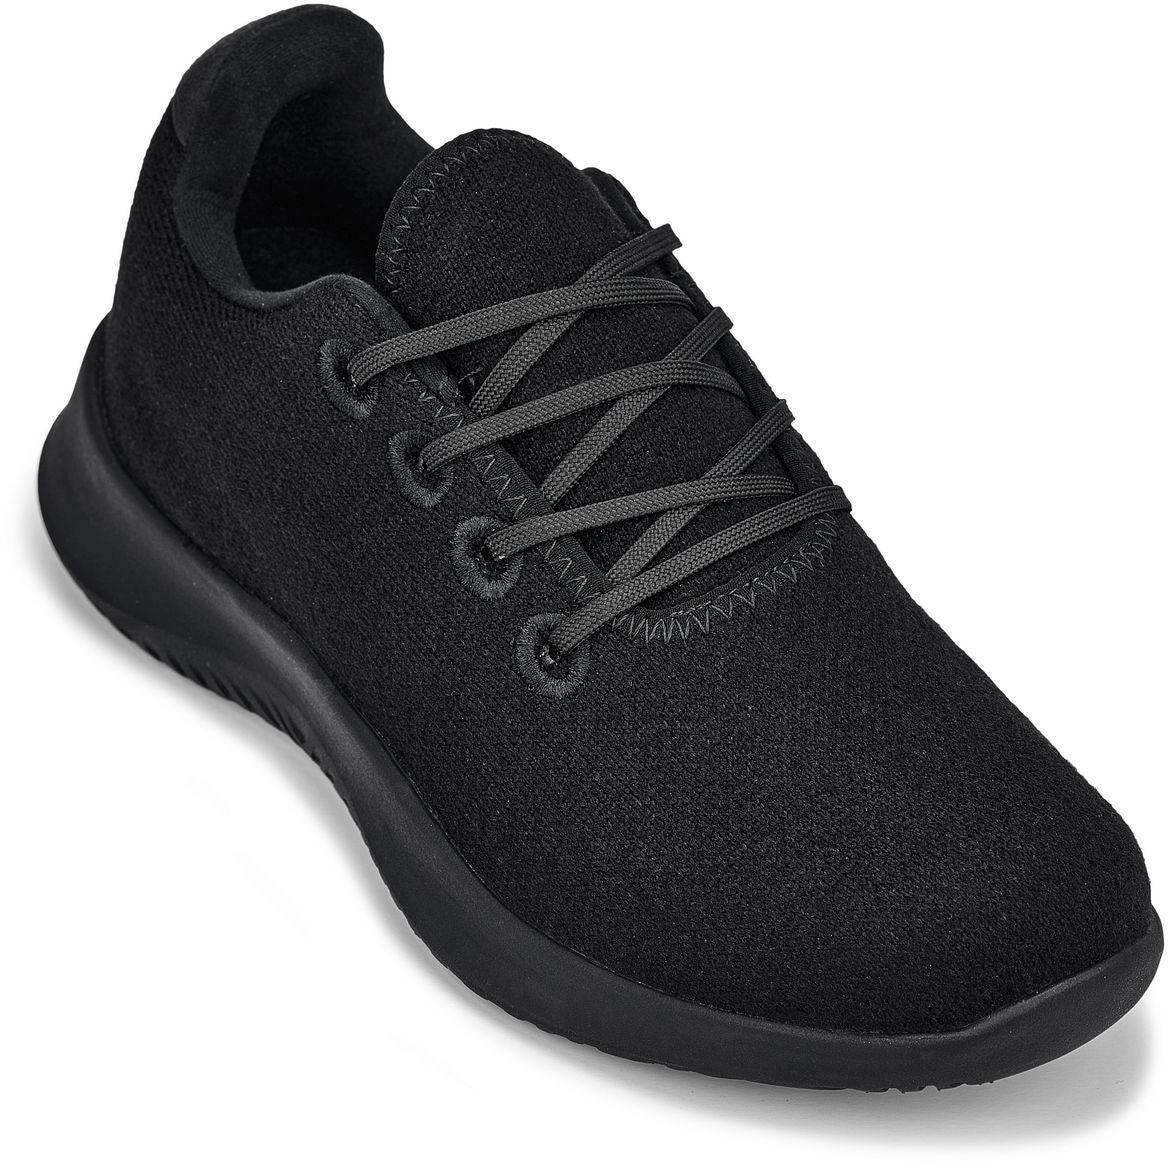 CALTO - Q502 - 2.4 بوصة أطول (أسود) - أحذية رياضية خفيفة الوزن للغاية